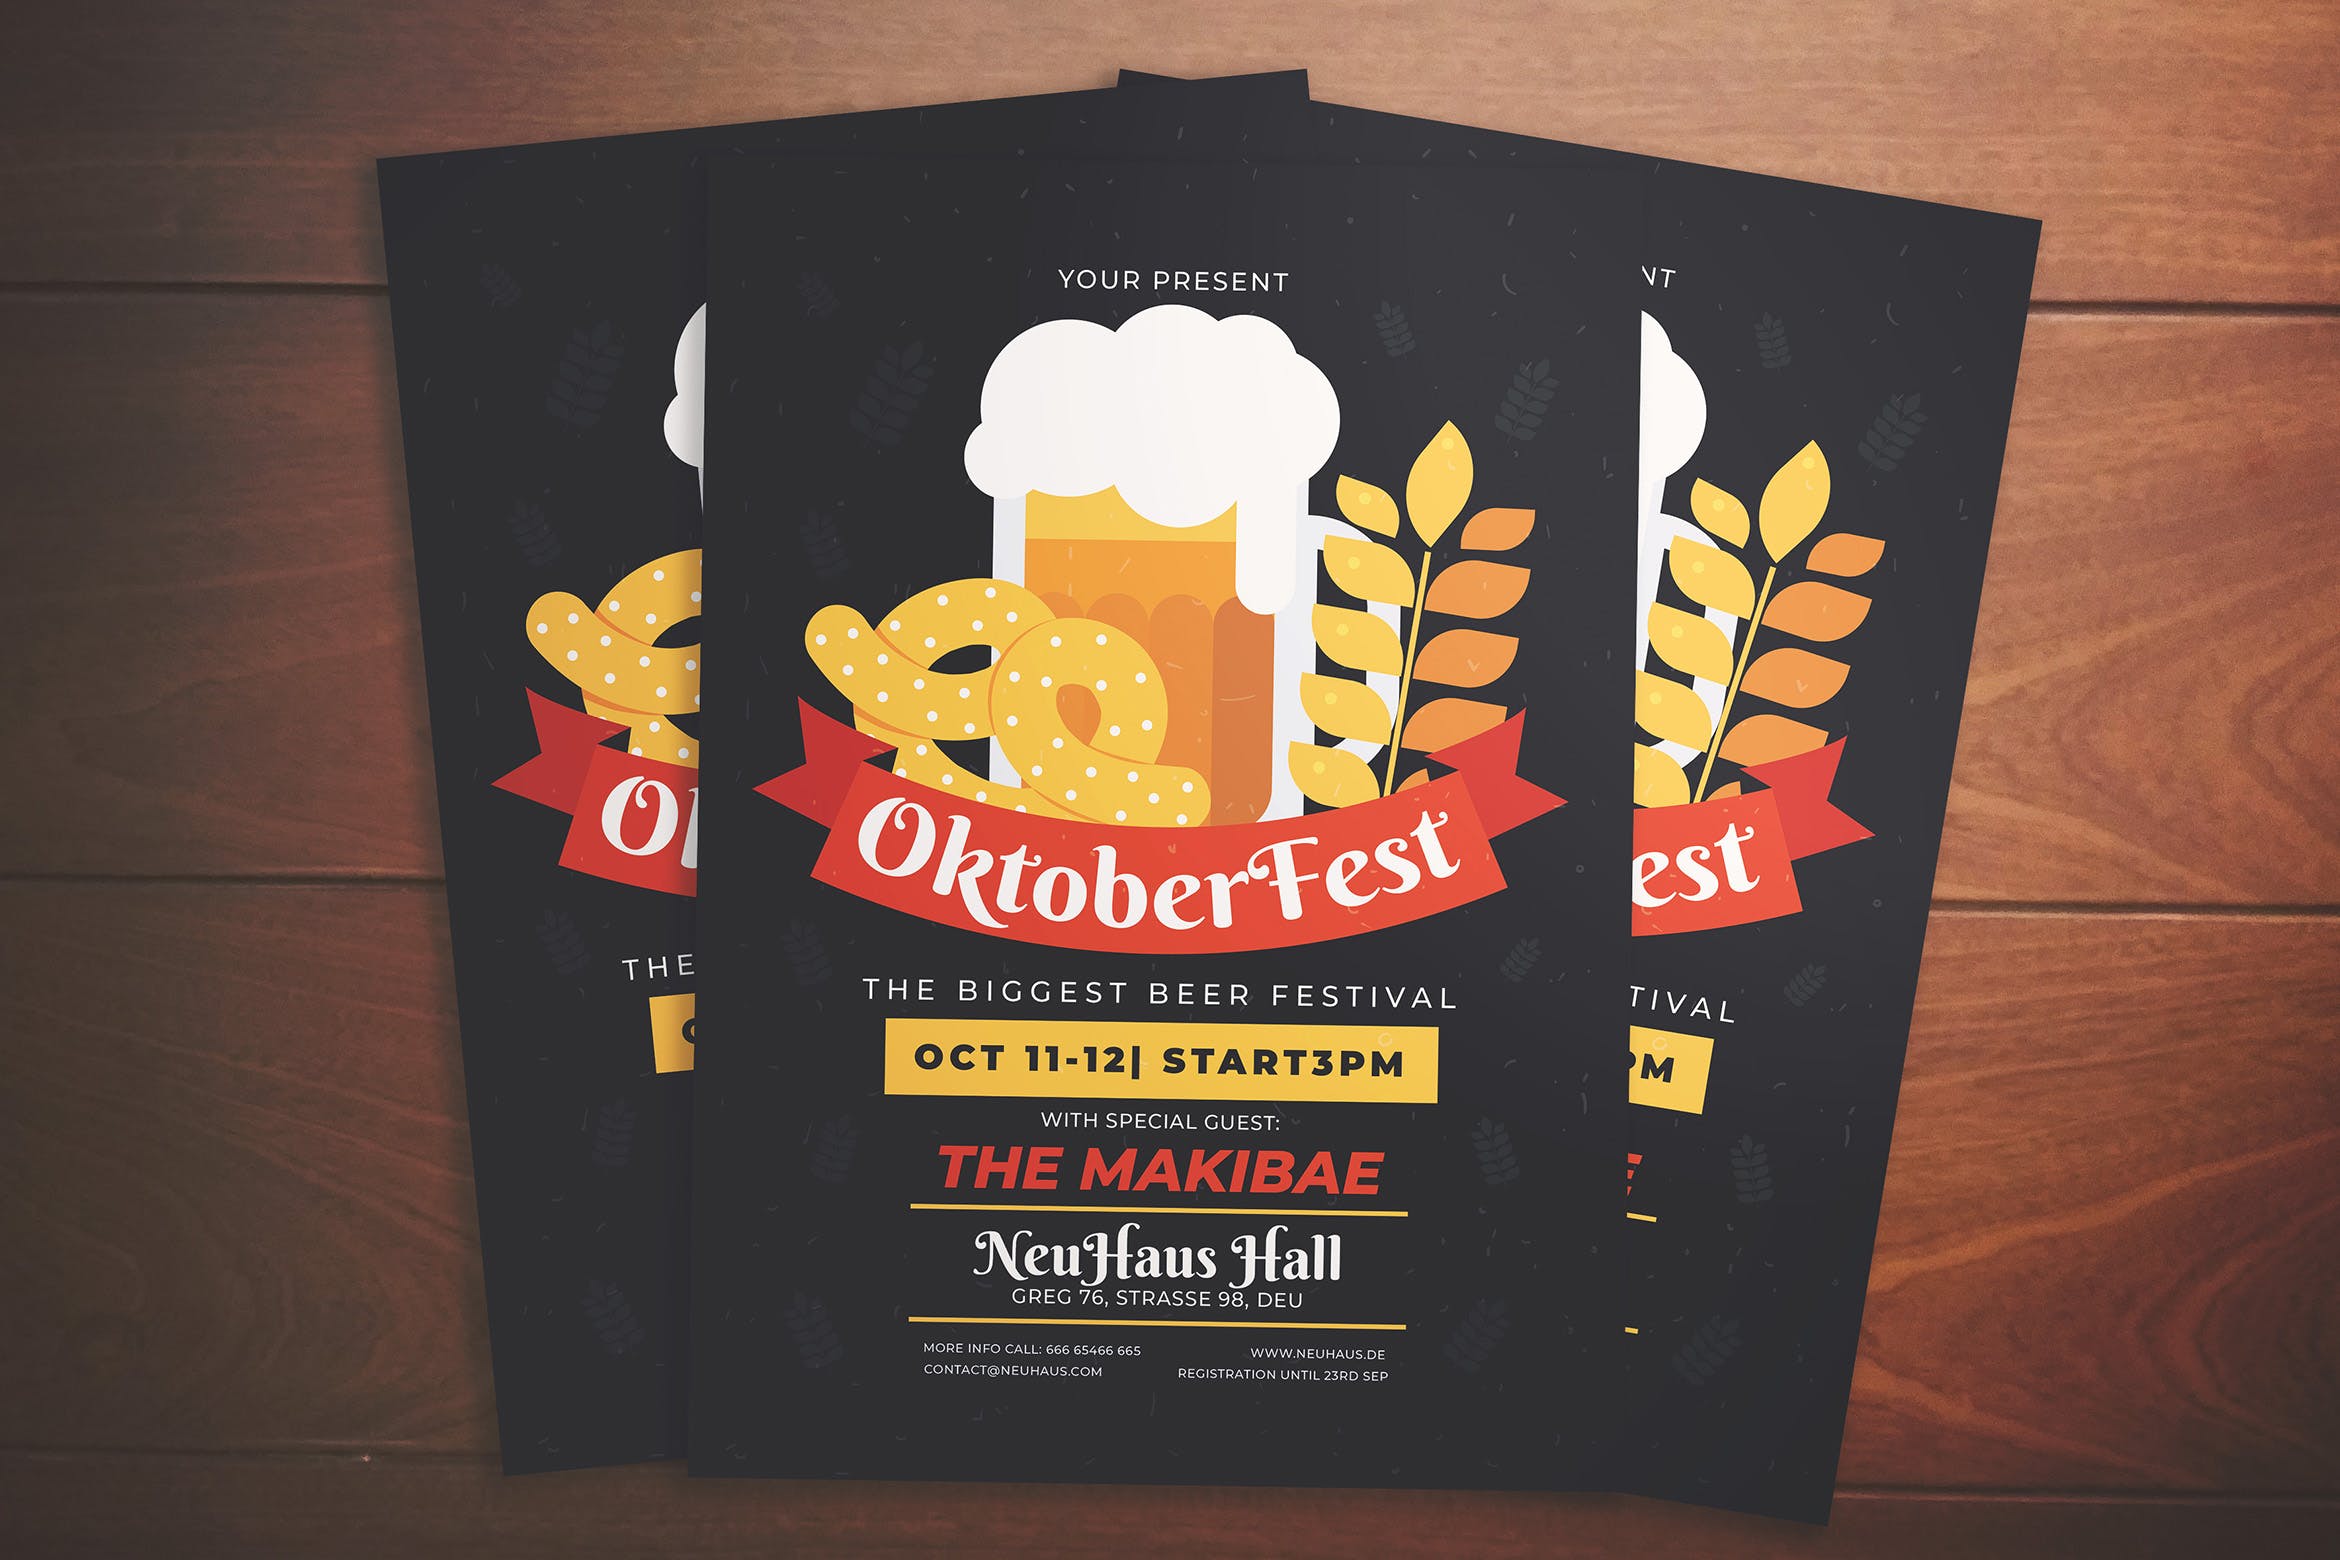 超市啤酒节活动海报设计模板素材 Oktoberfest Event Flyer插图